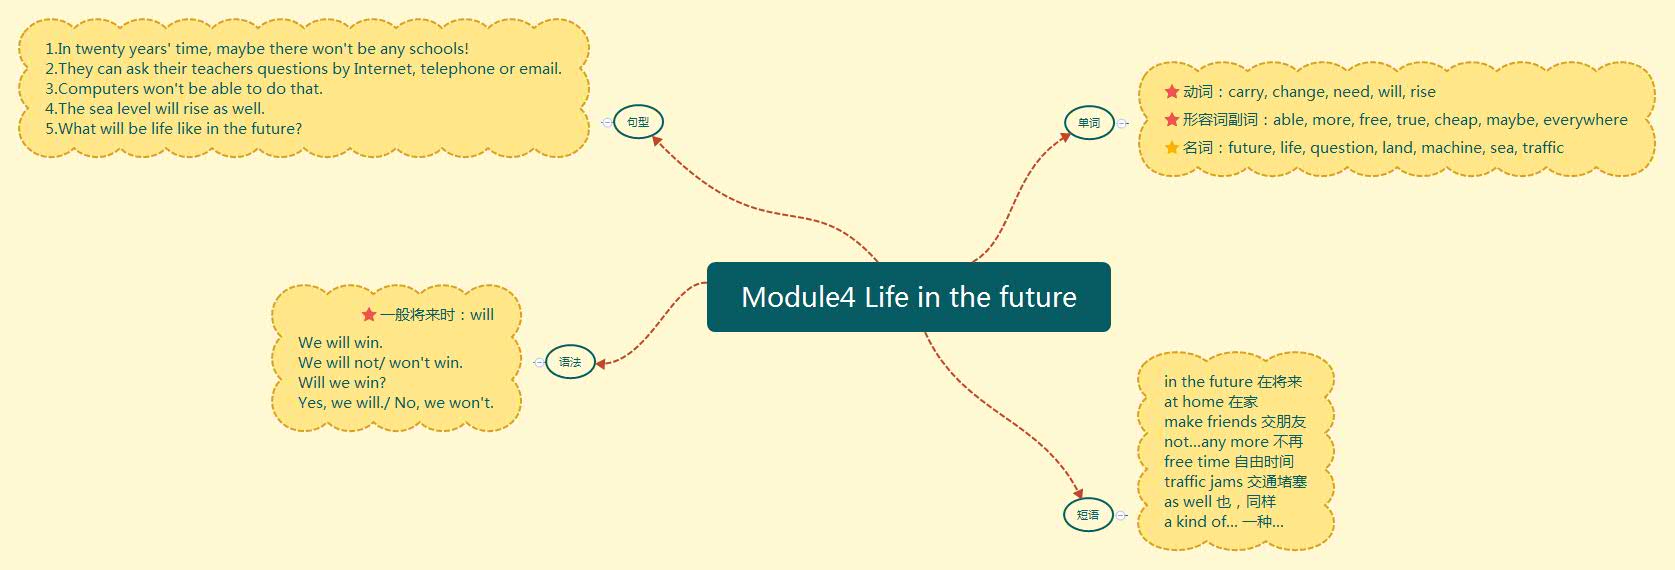 Module4 Life in the future.jpg